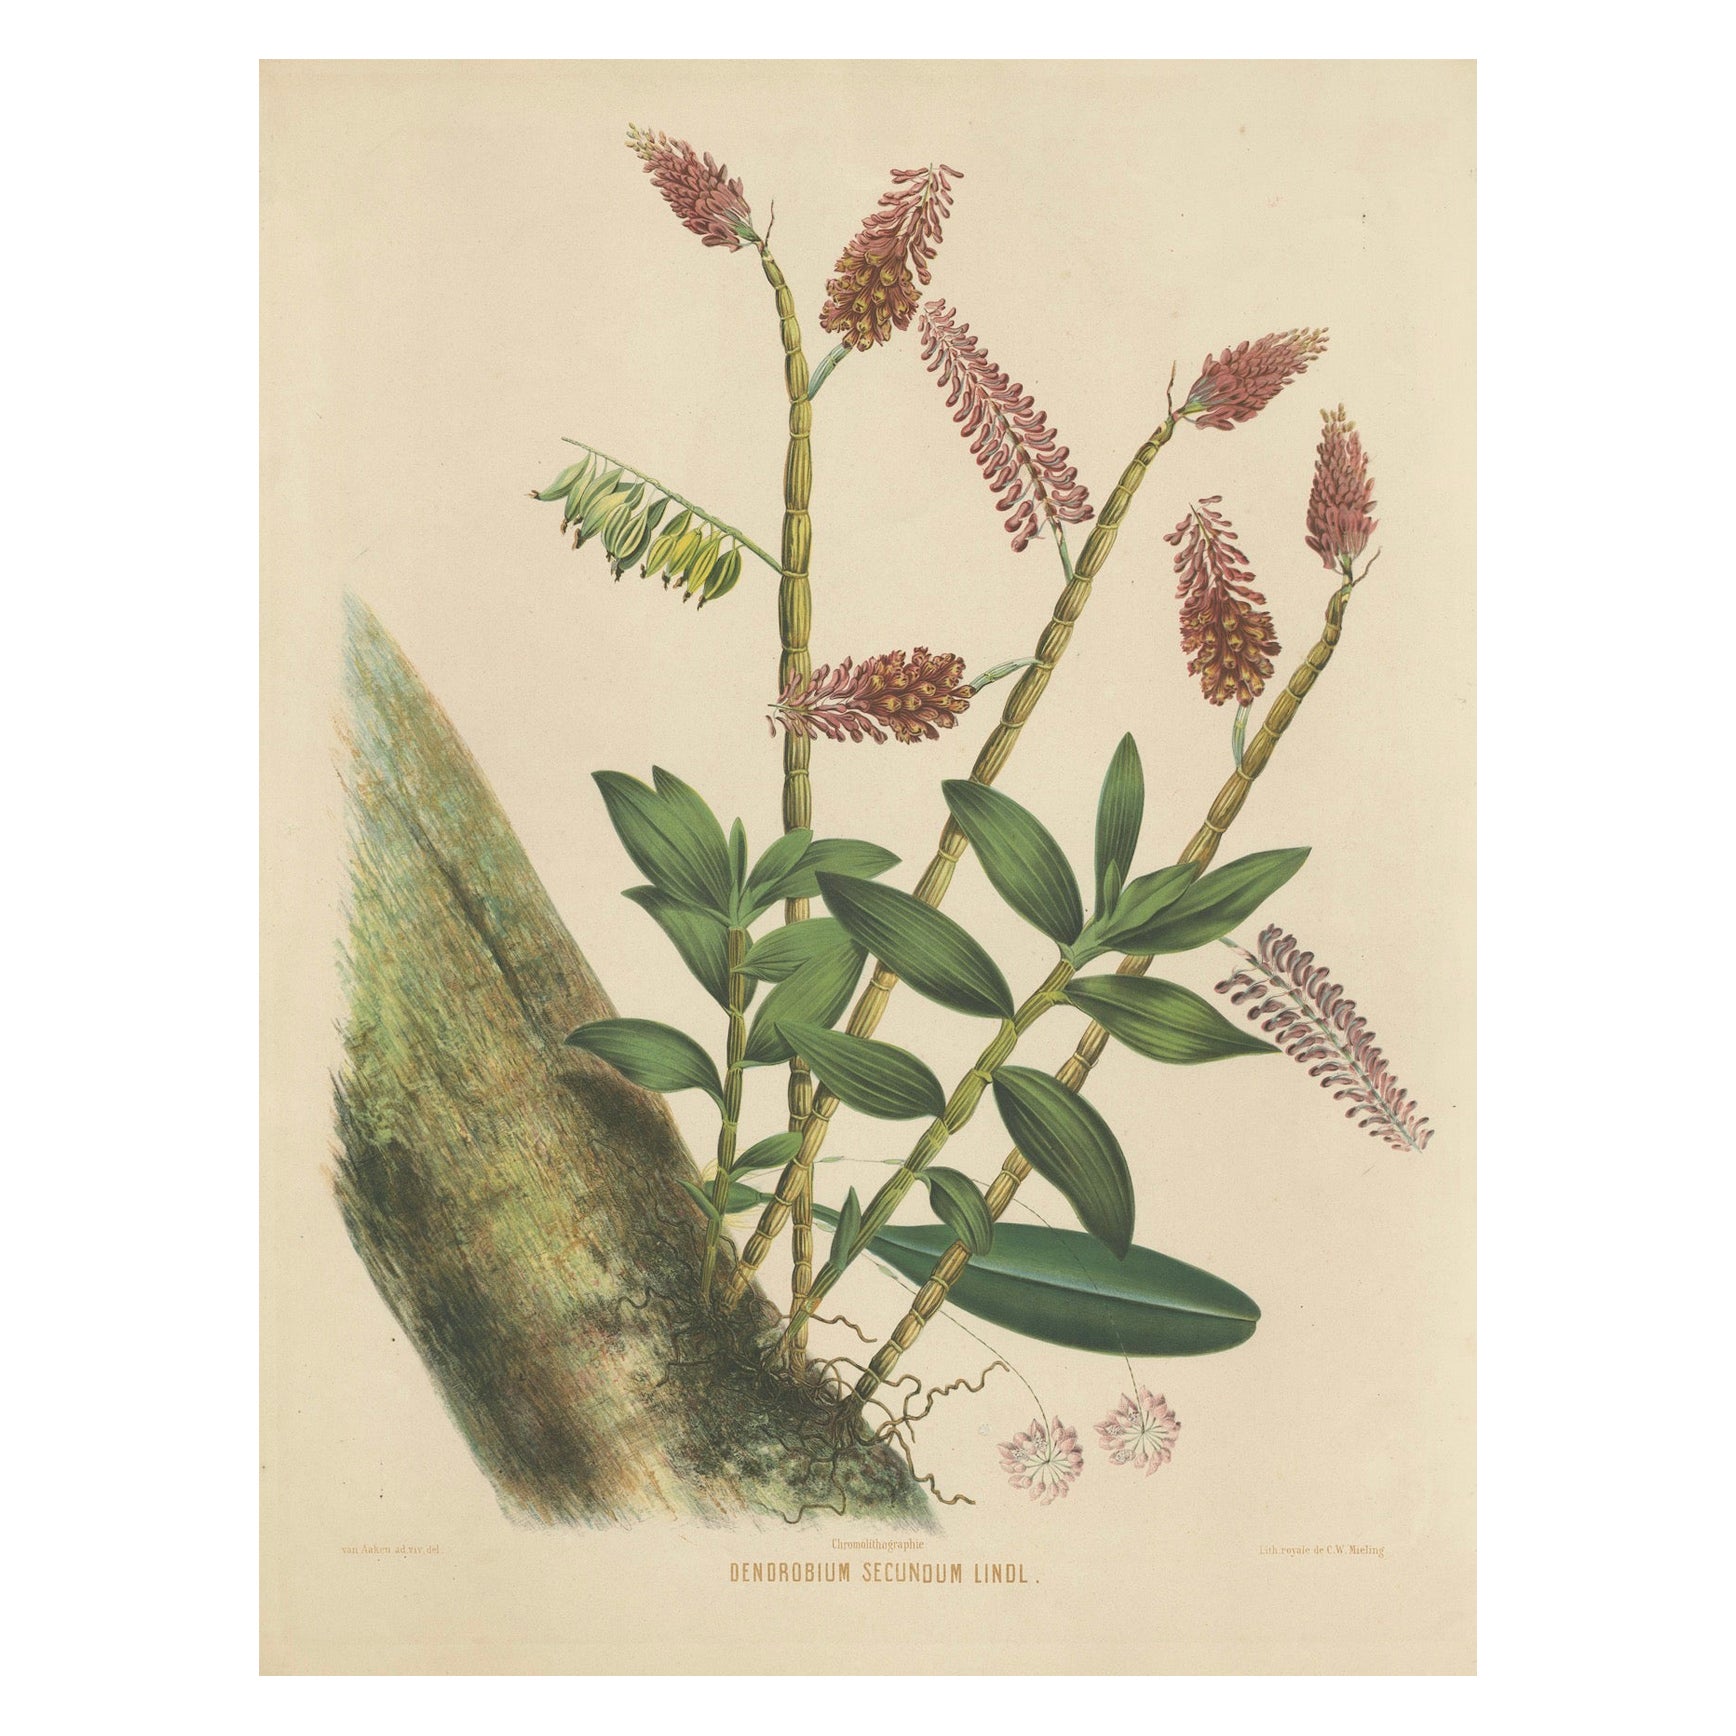 Splendor orchidée : grande héritage chrmolithologique des Indes orientales néerlandaises, 1854 